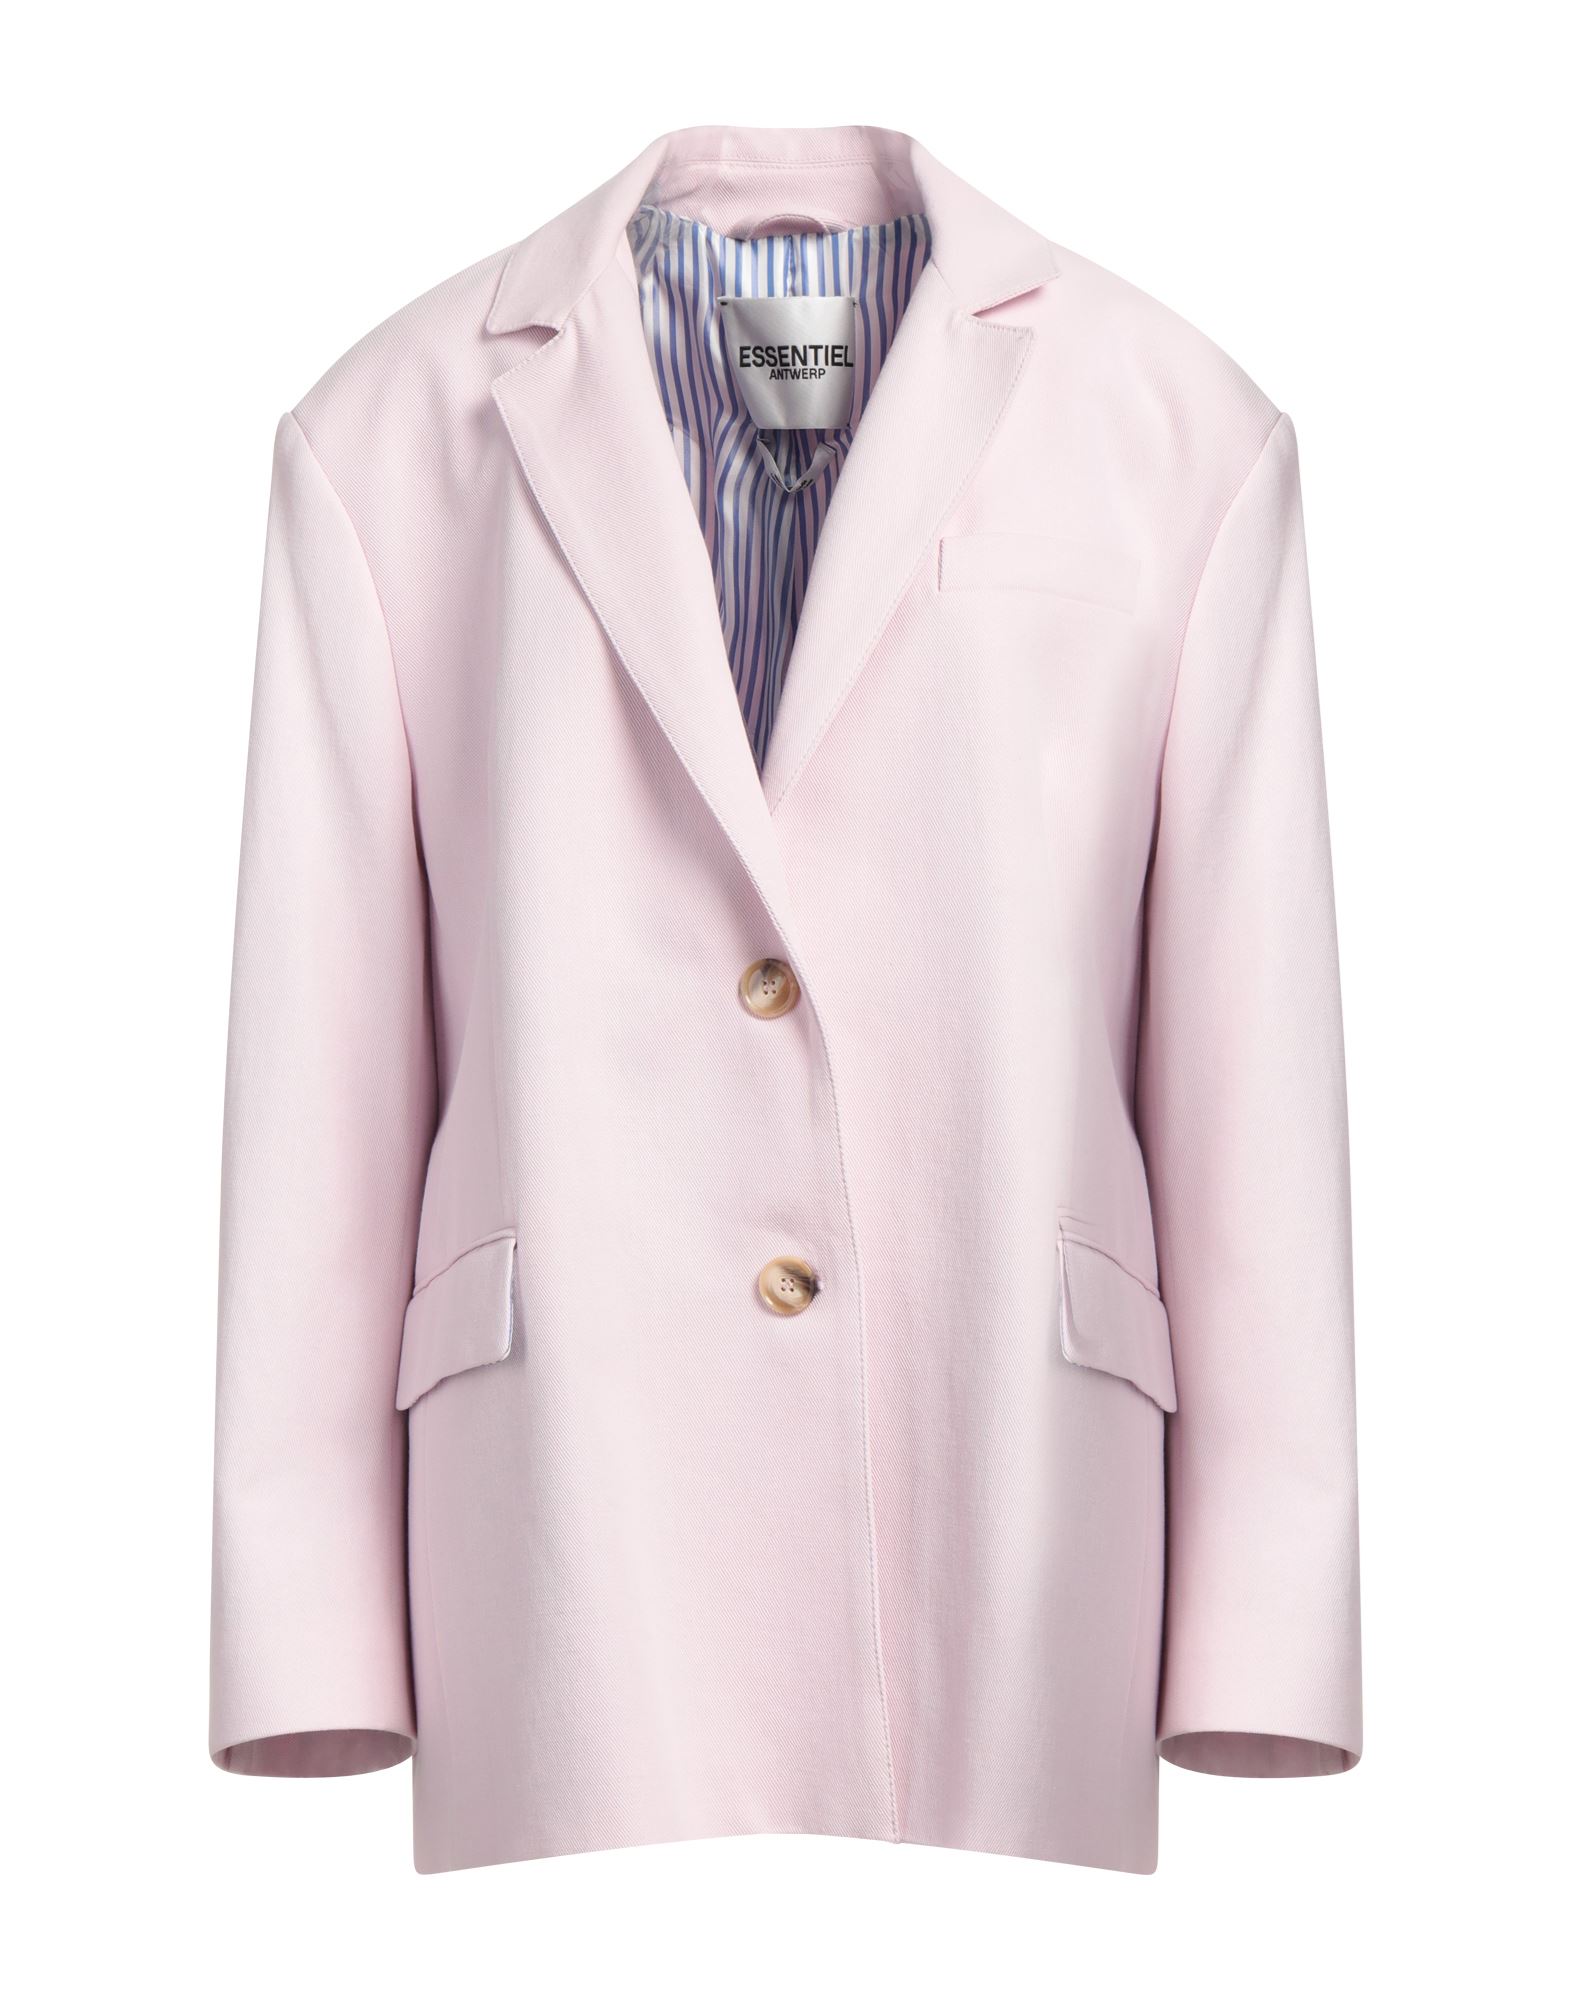 Essentiel Antwerp Suit Jackets In Pink | ModeSens